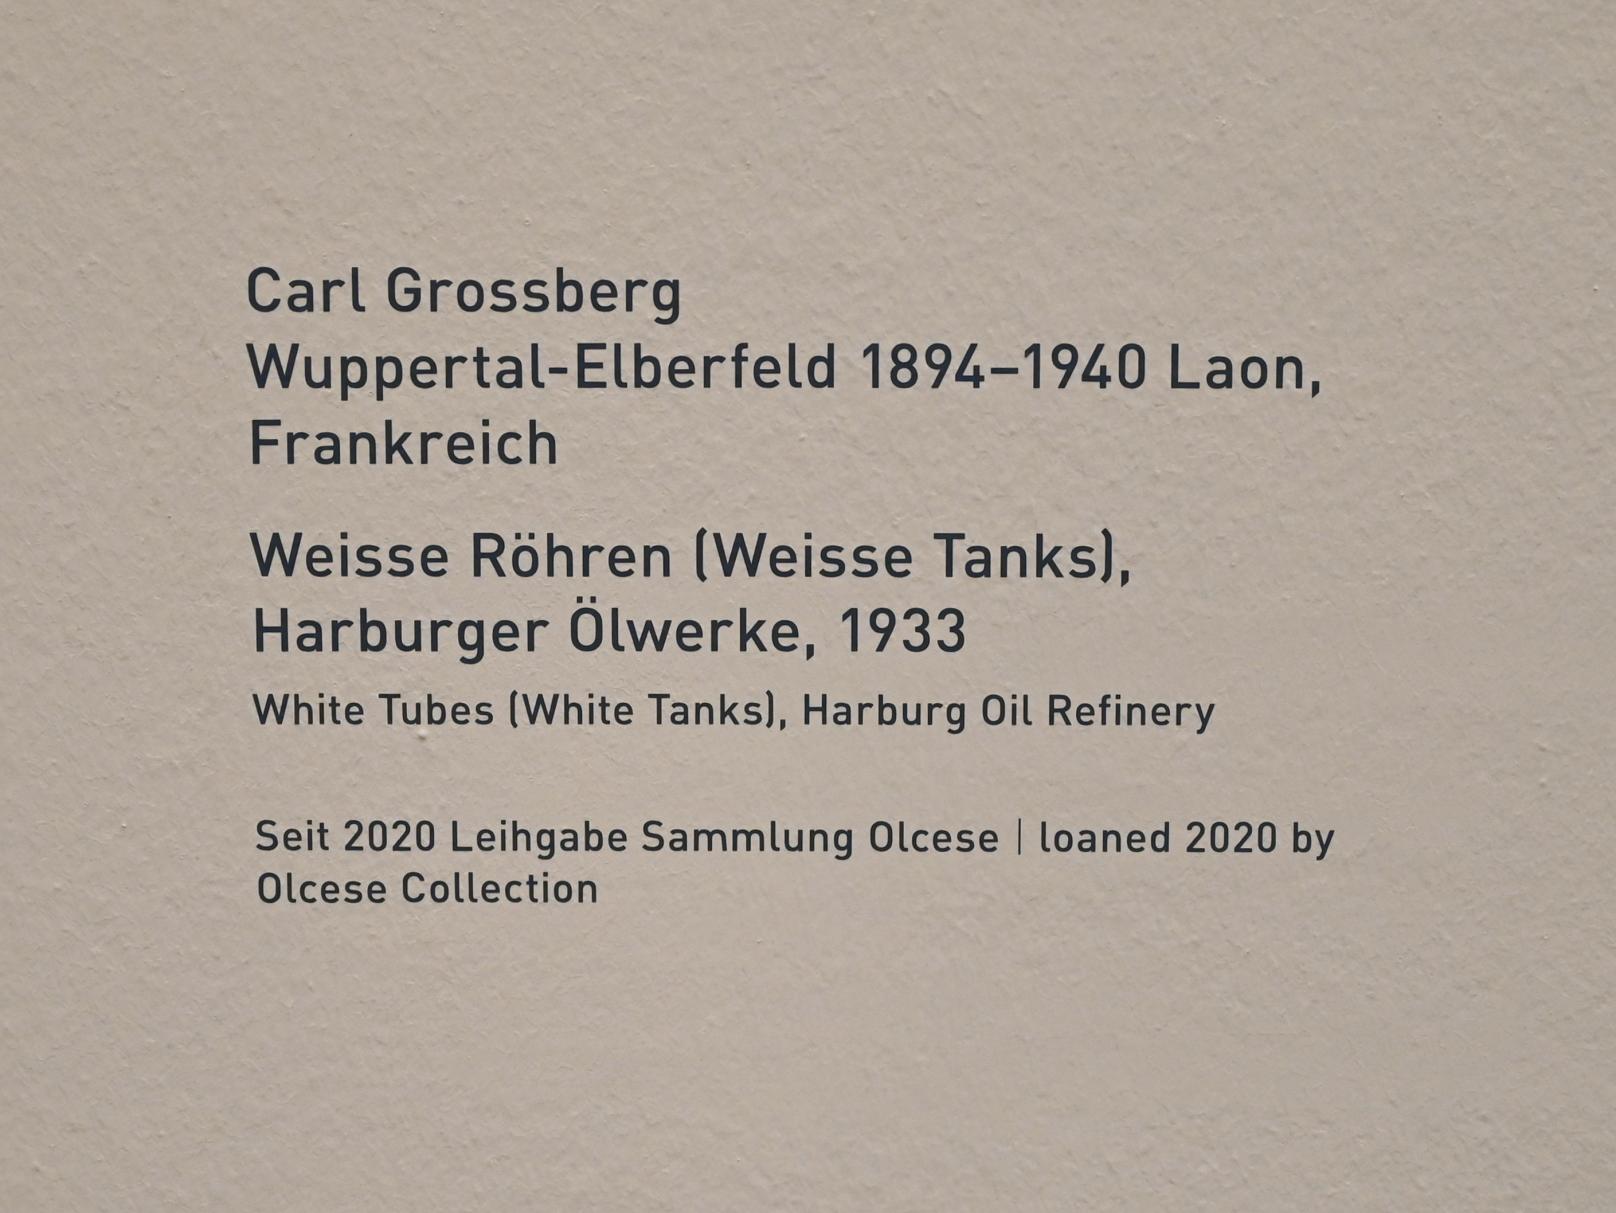 Carl Grossberg (1933), Weisse Röhren (Weisse Tanks), Harburger Ölwerke, München, Pinakothek der Moderne, Saal 12, 1933, Bild 2/2